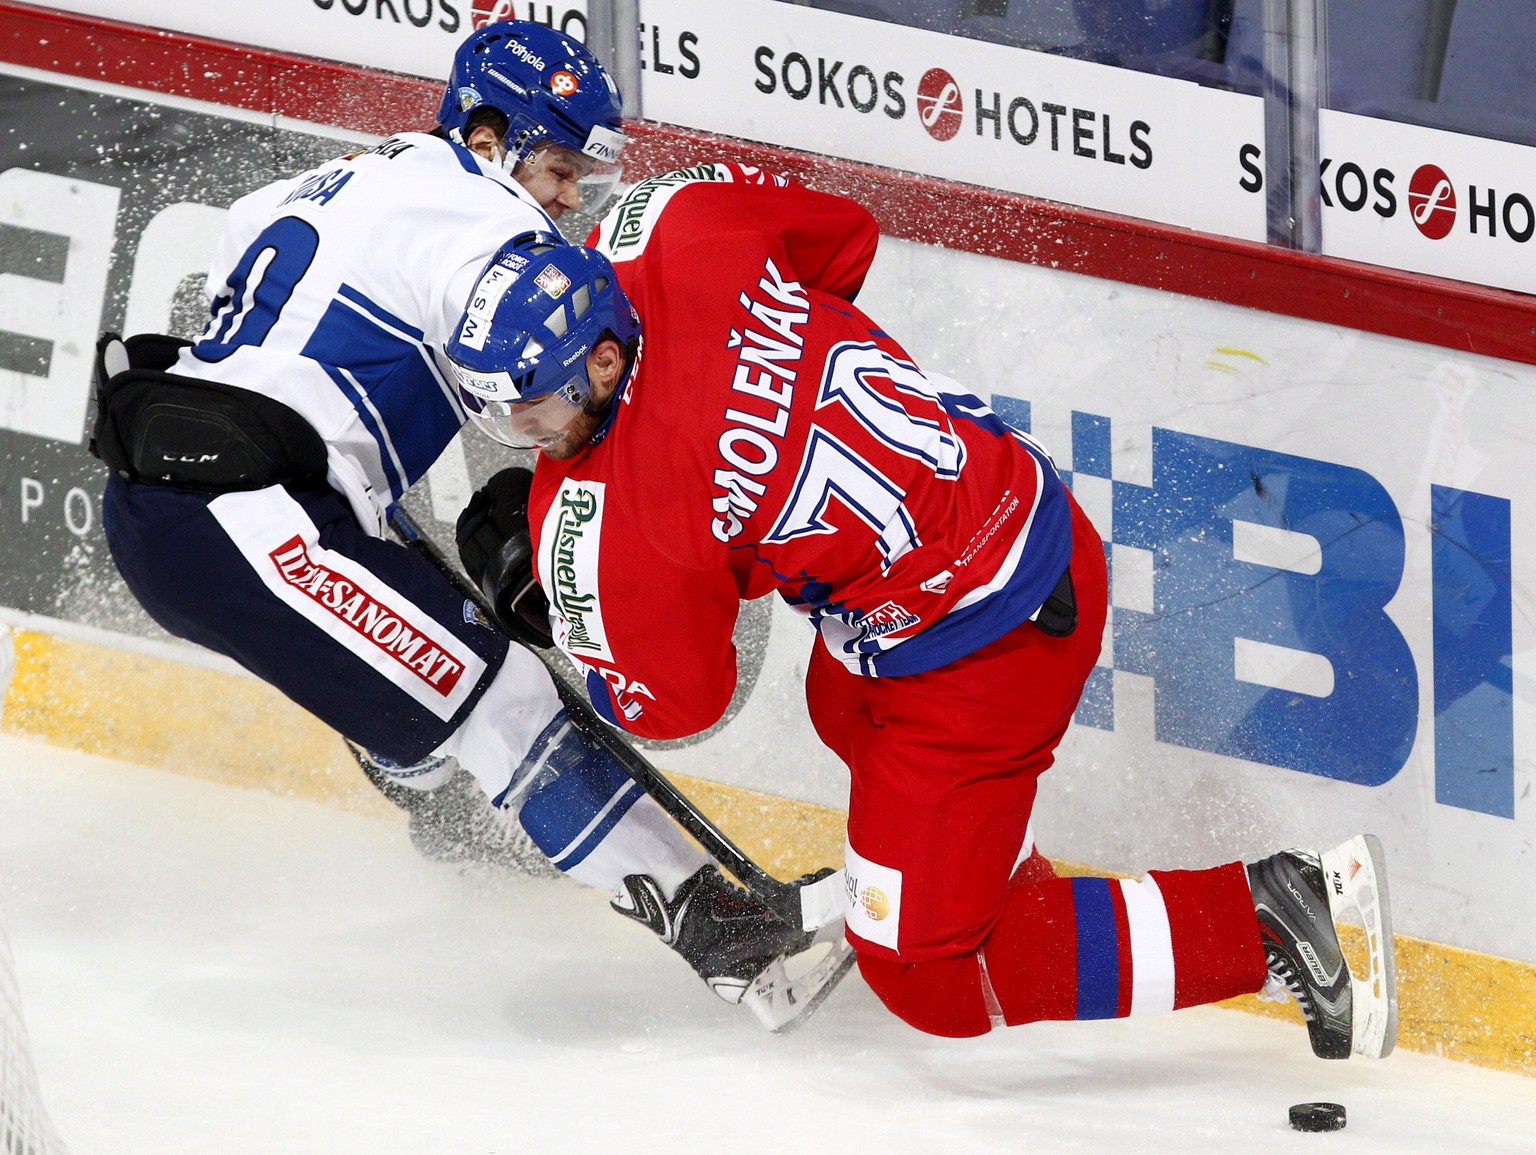 Der finnische Nationalspieler Mikko Kousa könnte die Berner Verteidigung verstärken.